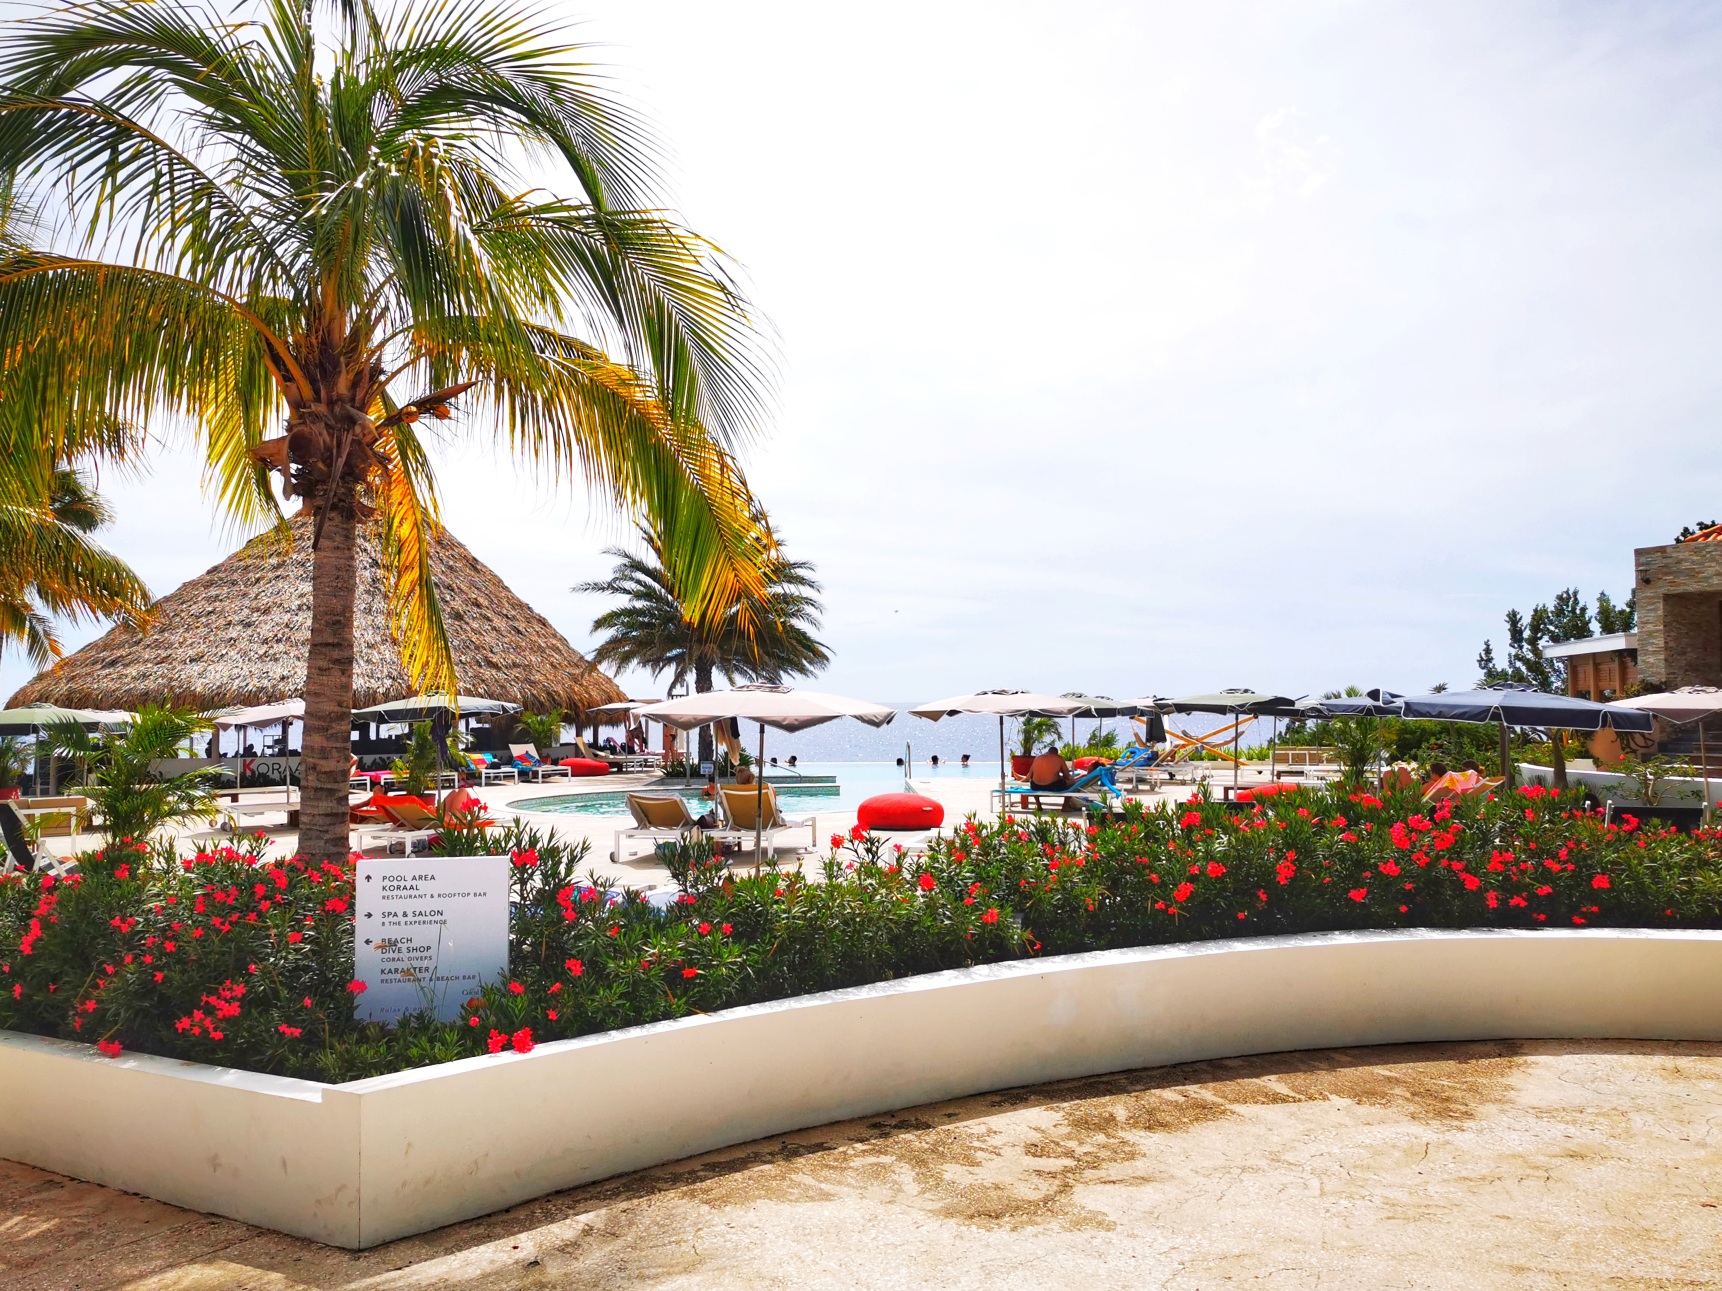 restaurant Koraal Curaçao - Lunchen rooftop bar & infinity pool recensie